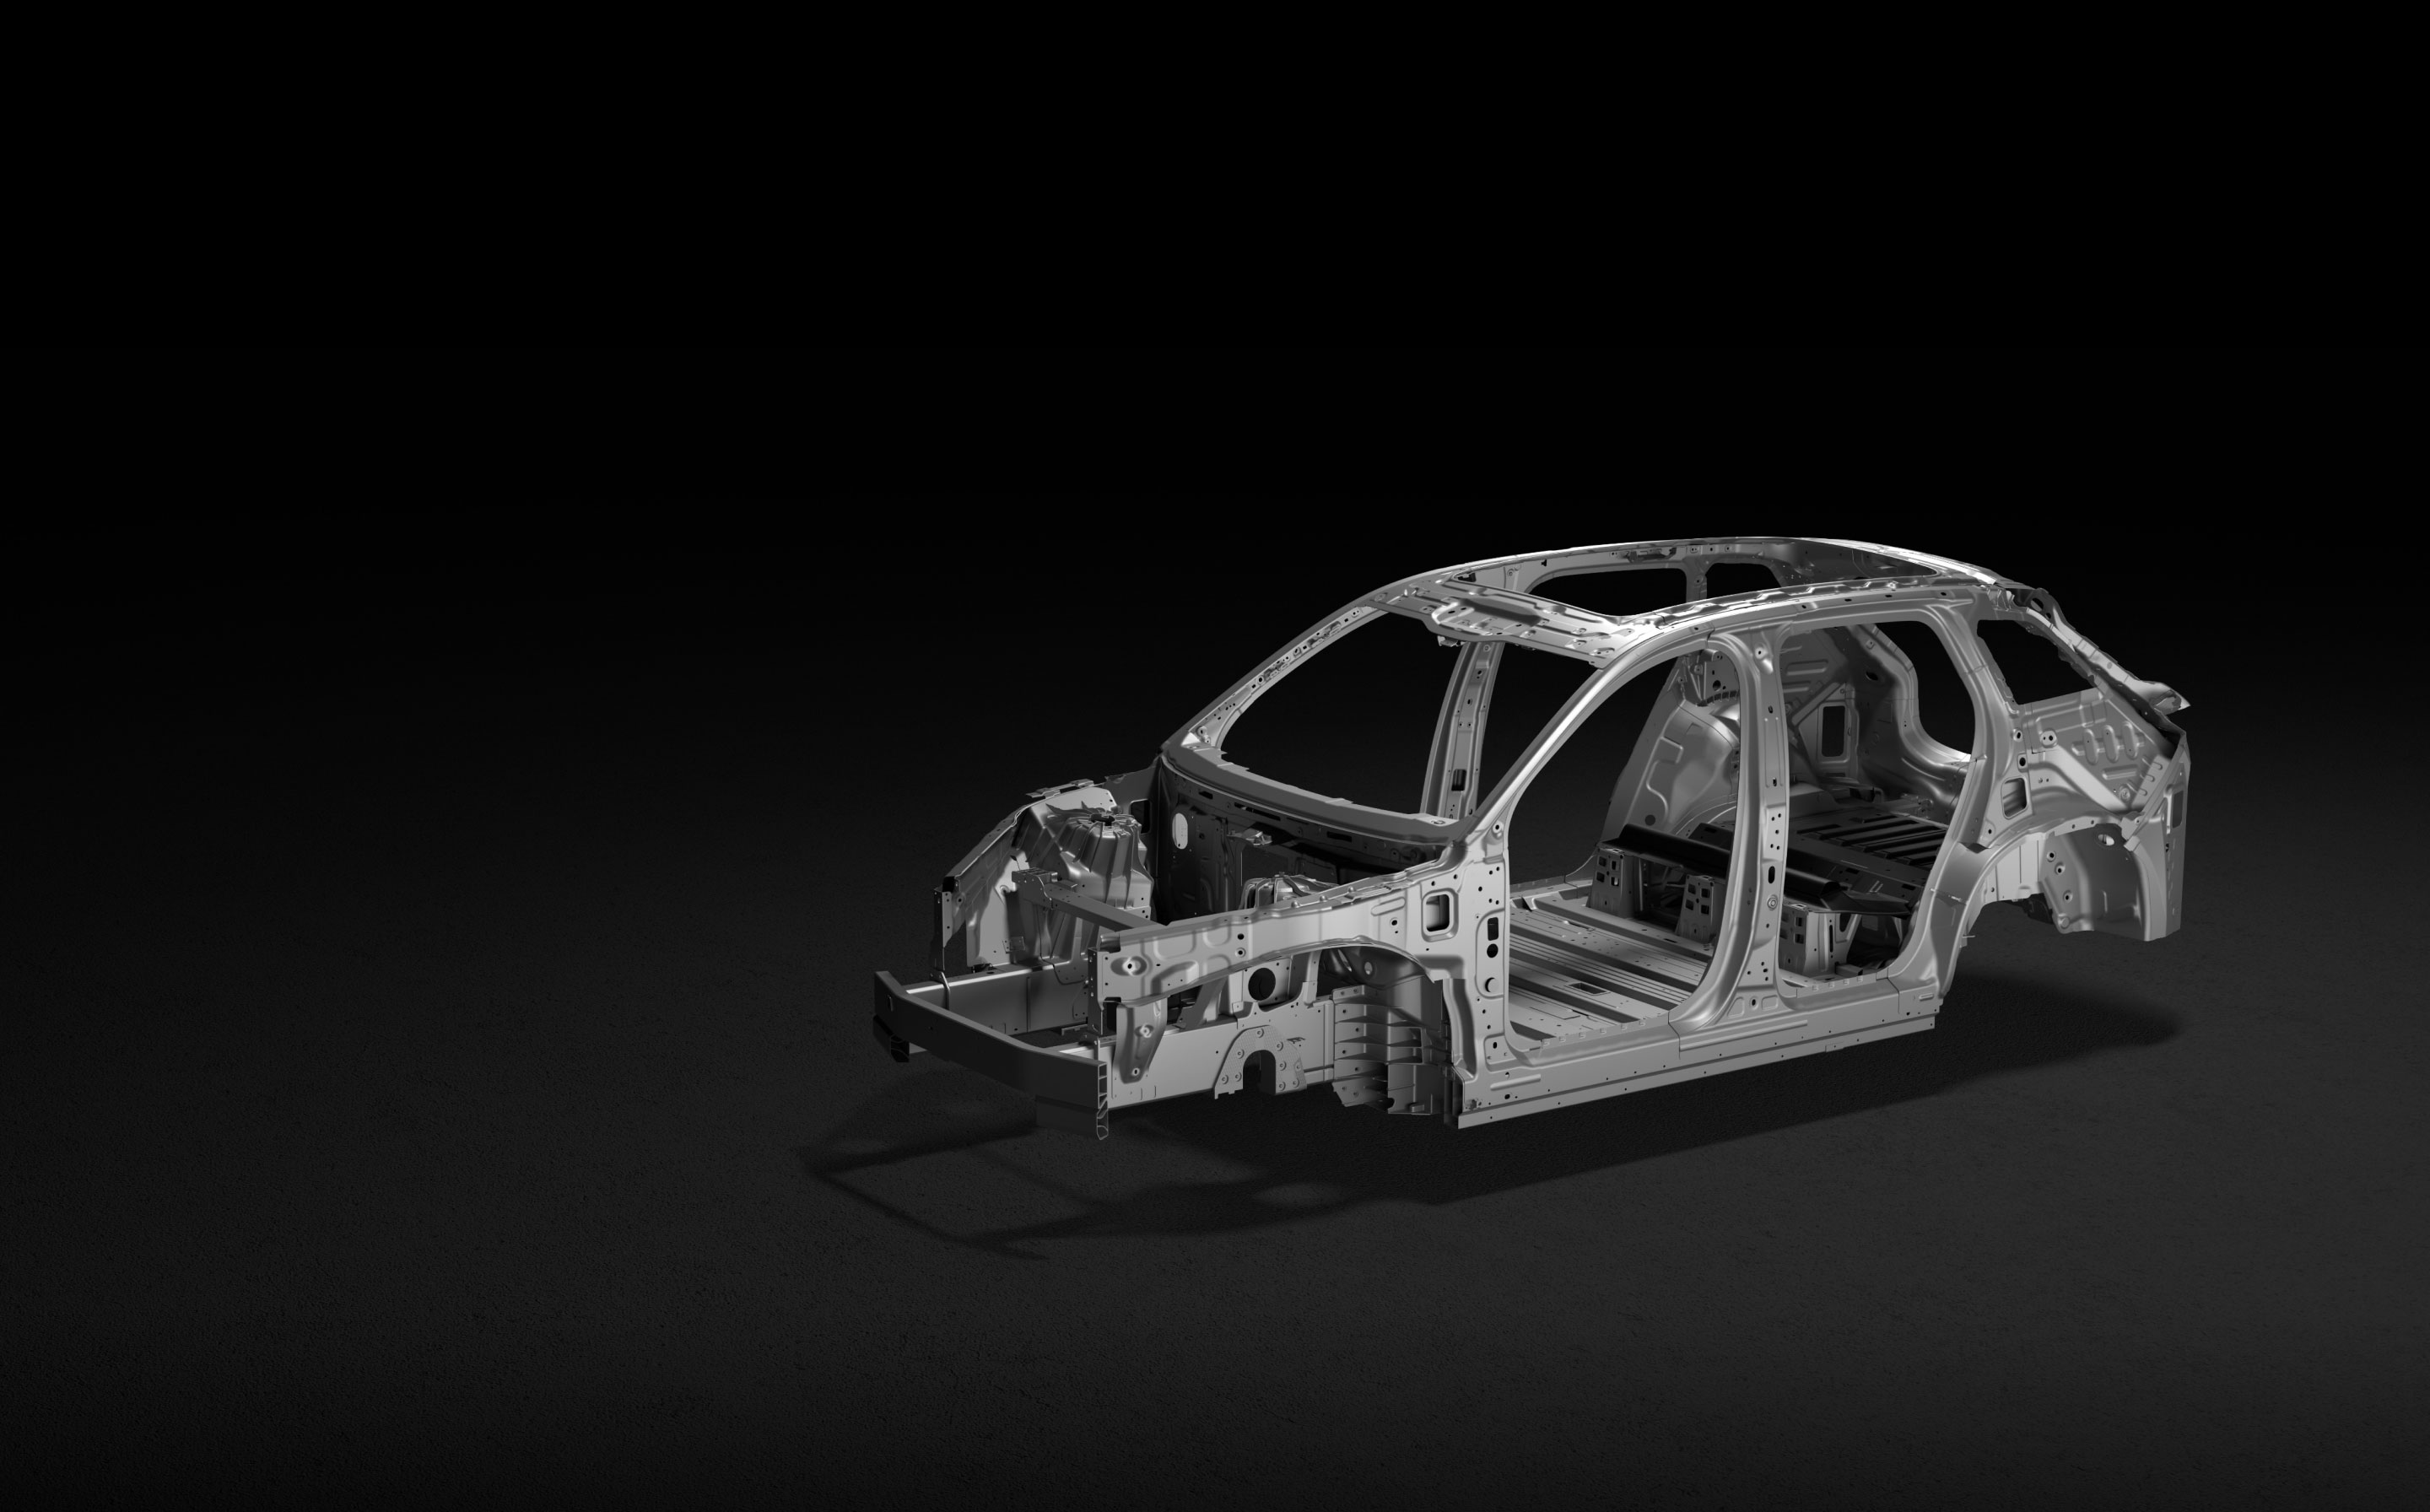 高强度铝合金及碳纤维混合车身架构-蔚来ES7-NIO蔚来官网